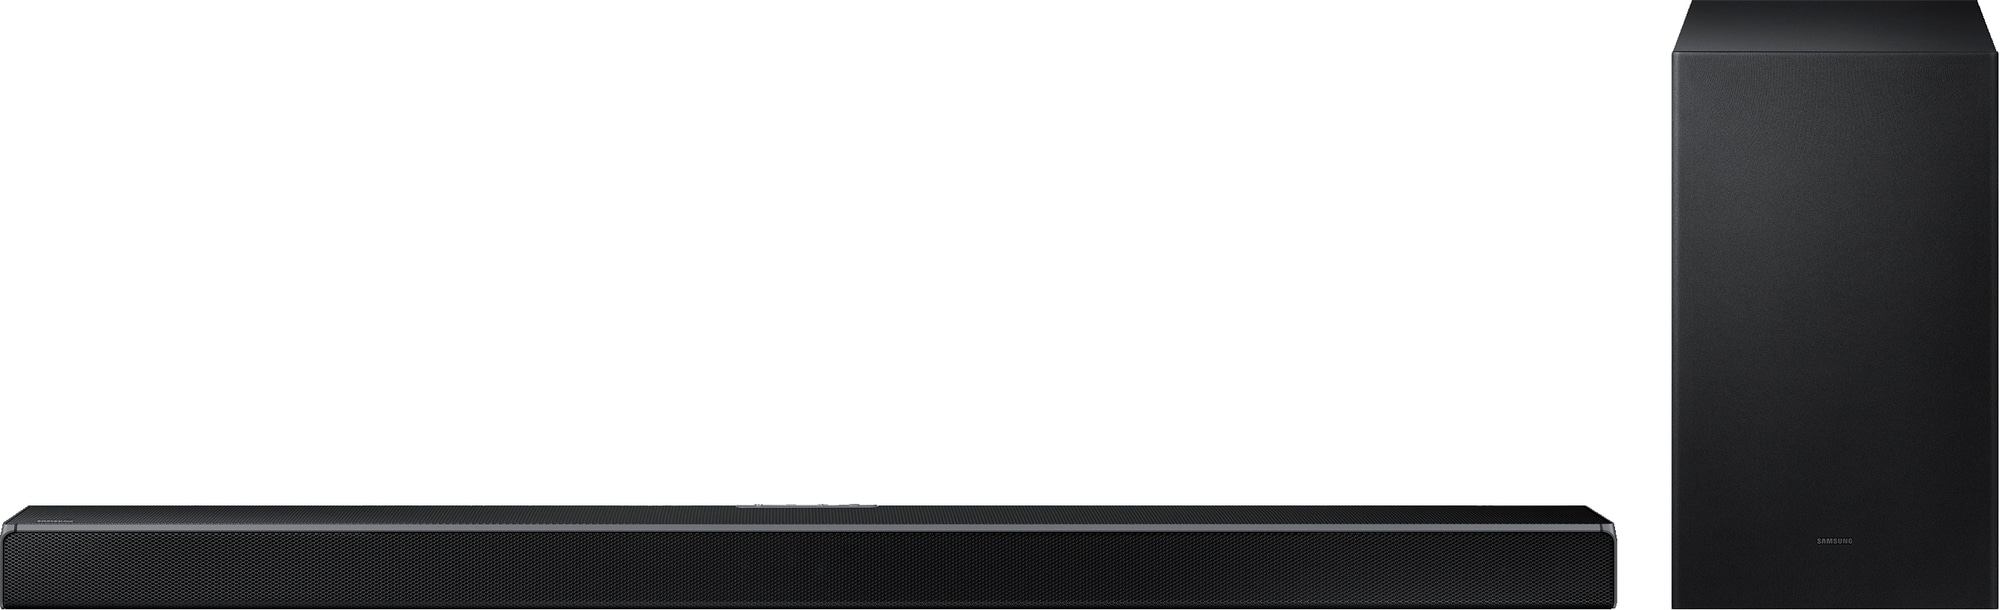 Samsung HW-Q610A 3.1.2ch soundbar med trådløs subwoofer | Elgiganten